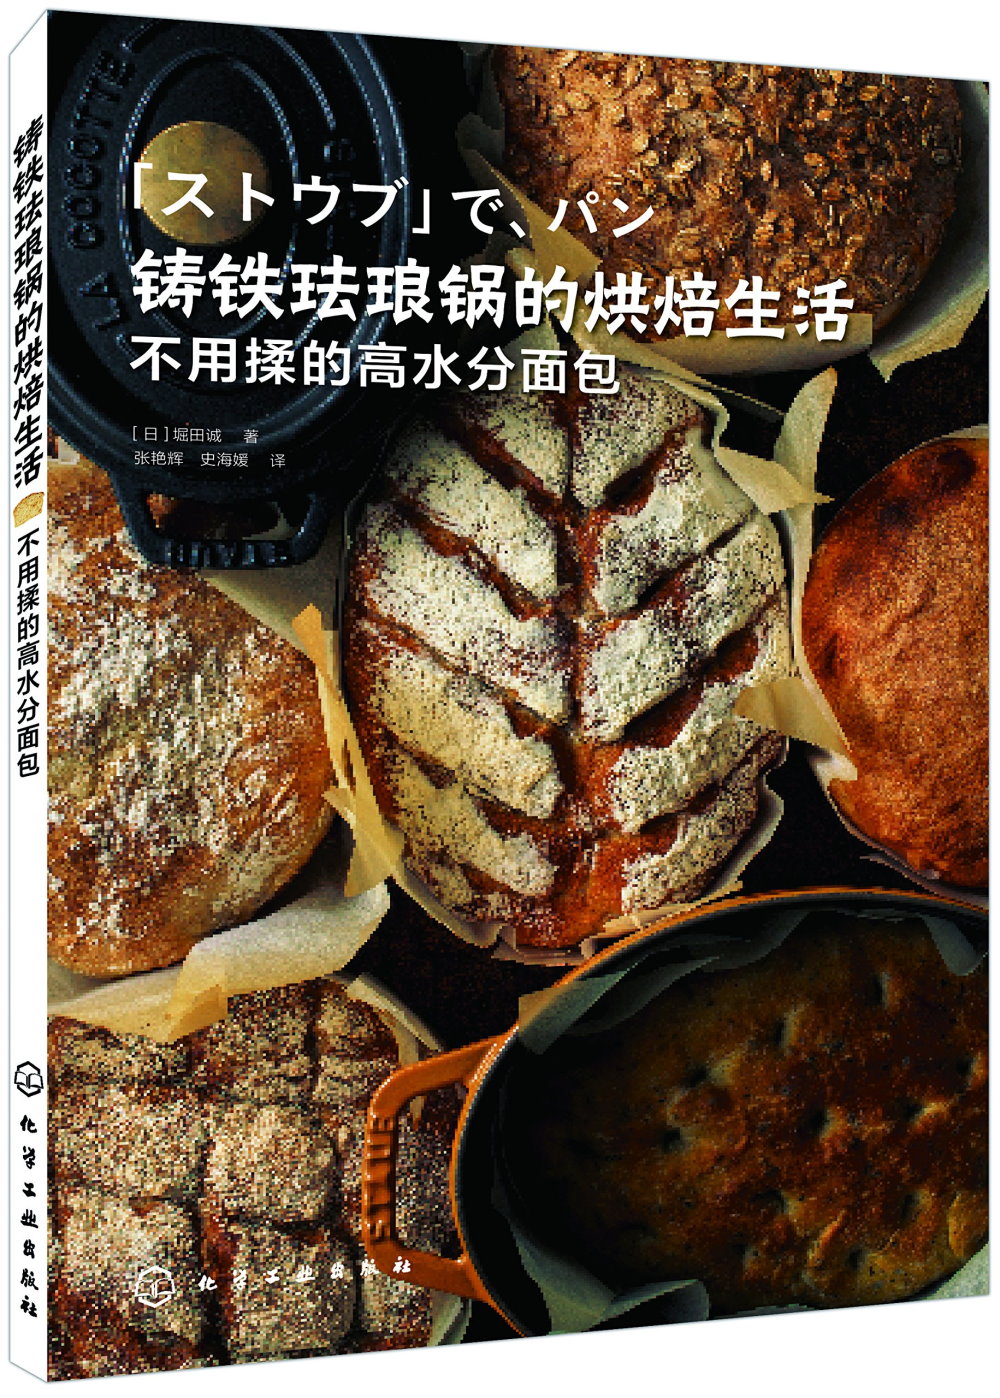 鑄鐵琺琅鍋的烘焙生活，不用揉的高水分面包